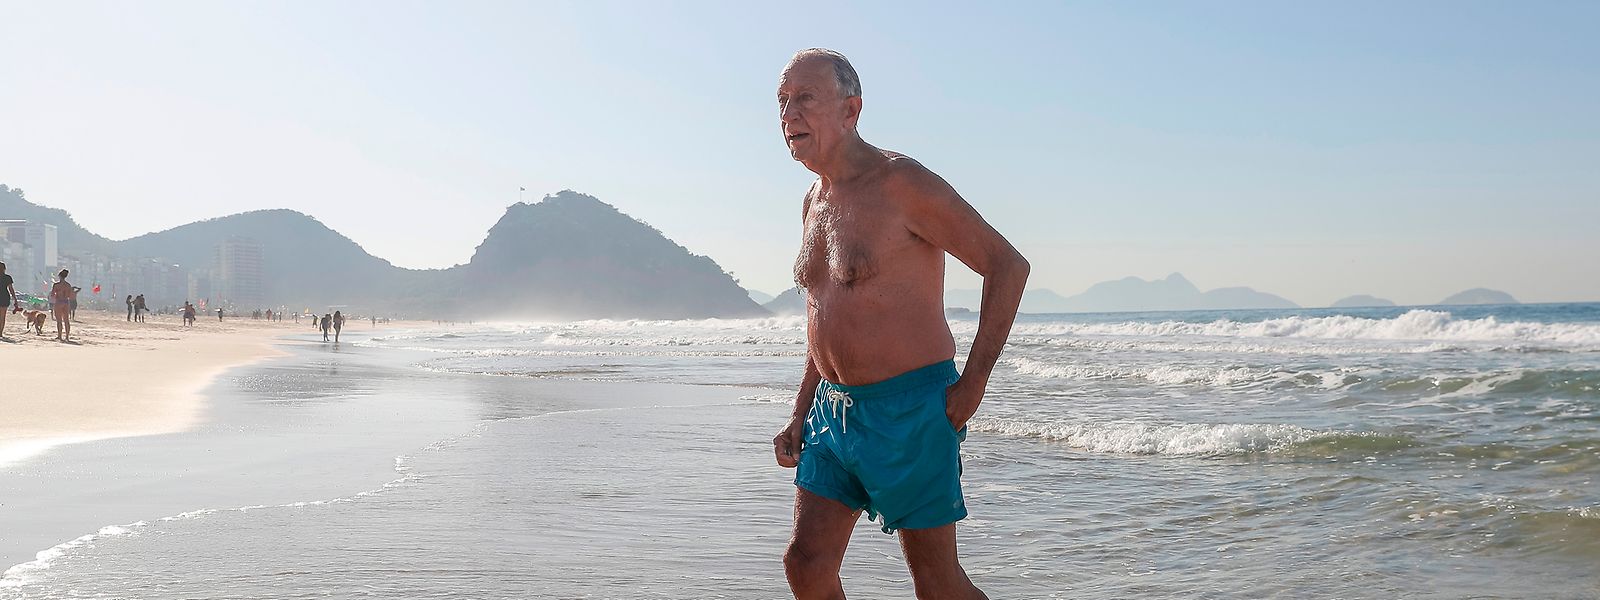 O Presidente da República de Portugal, Marcelo Rebelo de Sousa, sai da água no final do mergulho na praia de Copacabana, no Rio de Janeiro.